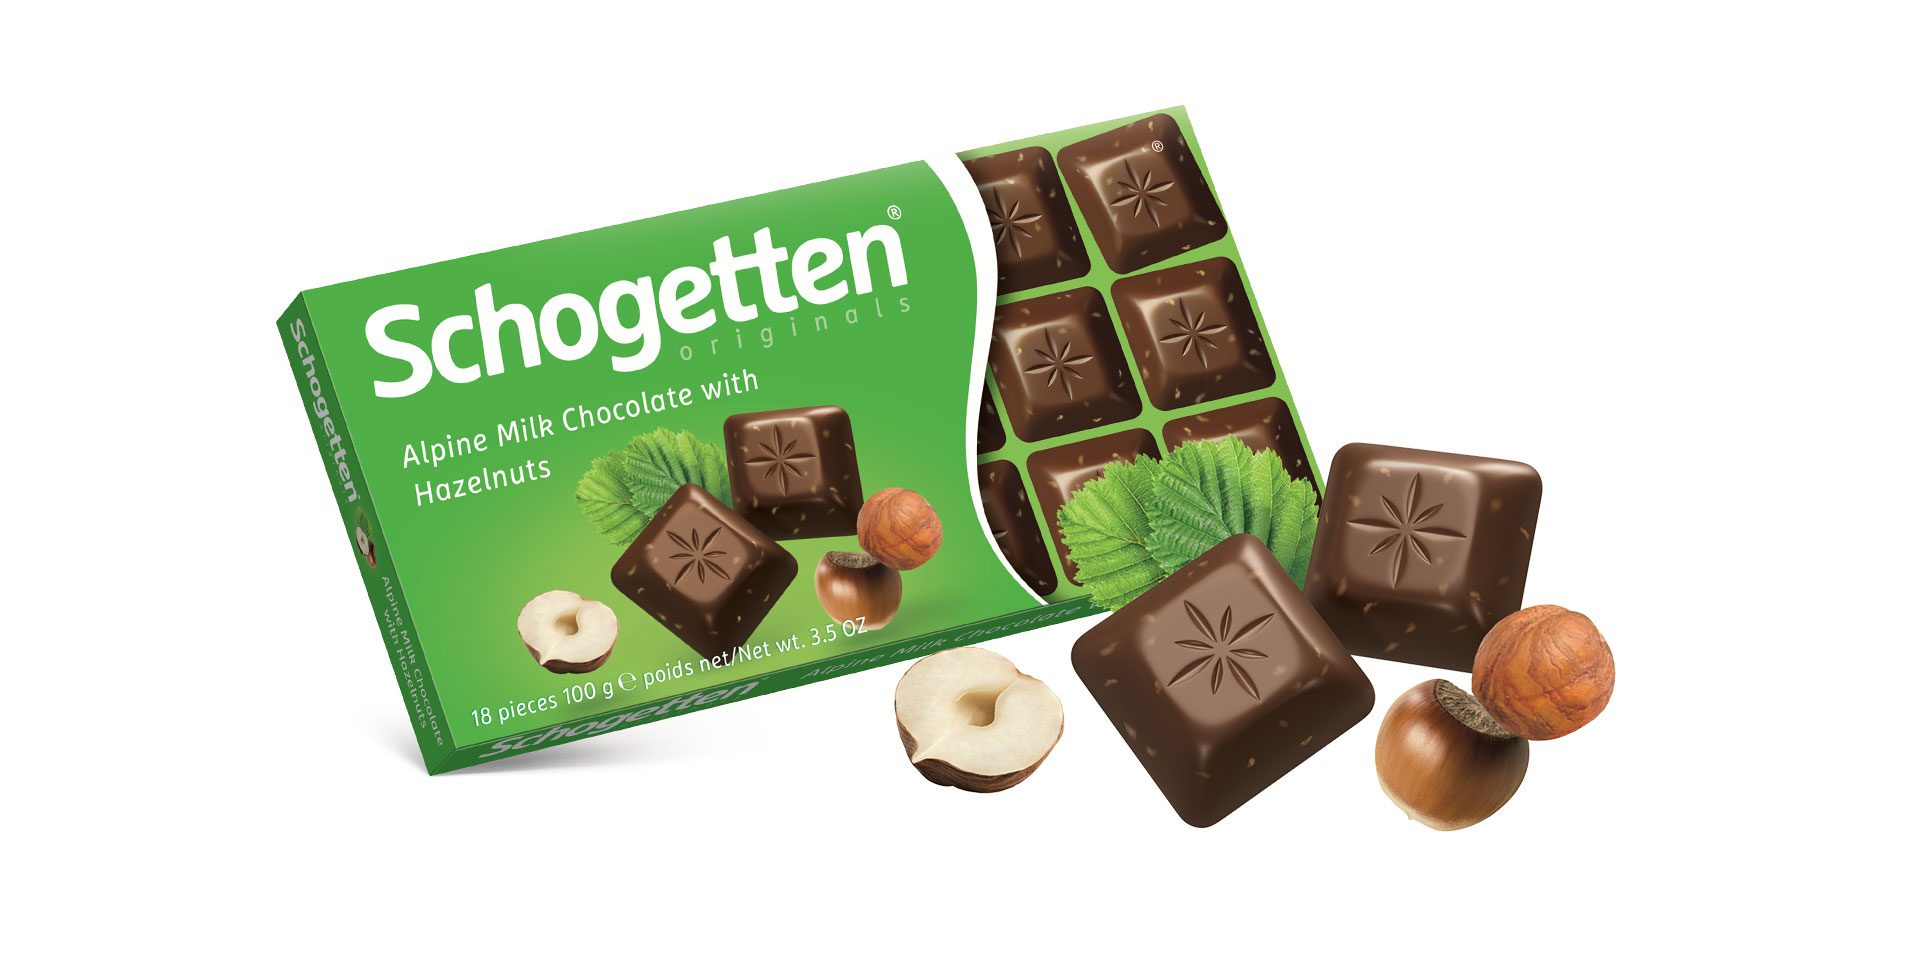 Schogetten Chocolate, Alpine Milk with Hazelnuts, 100g